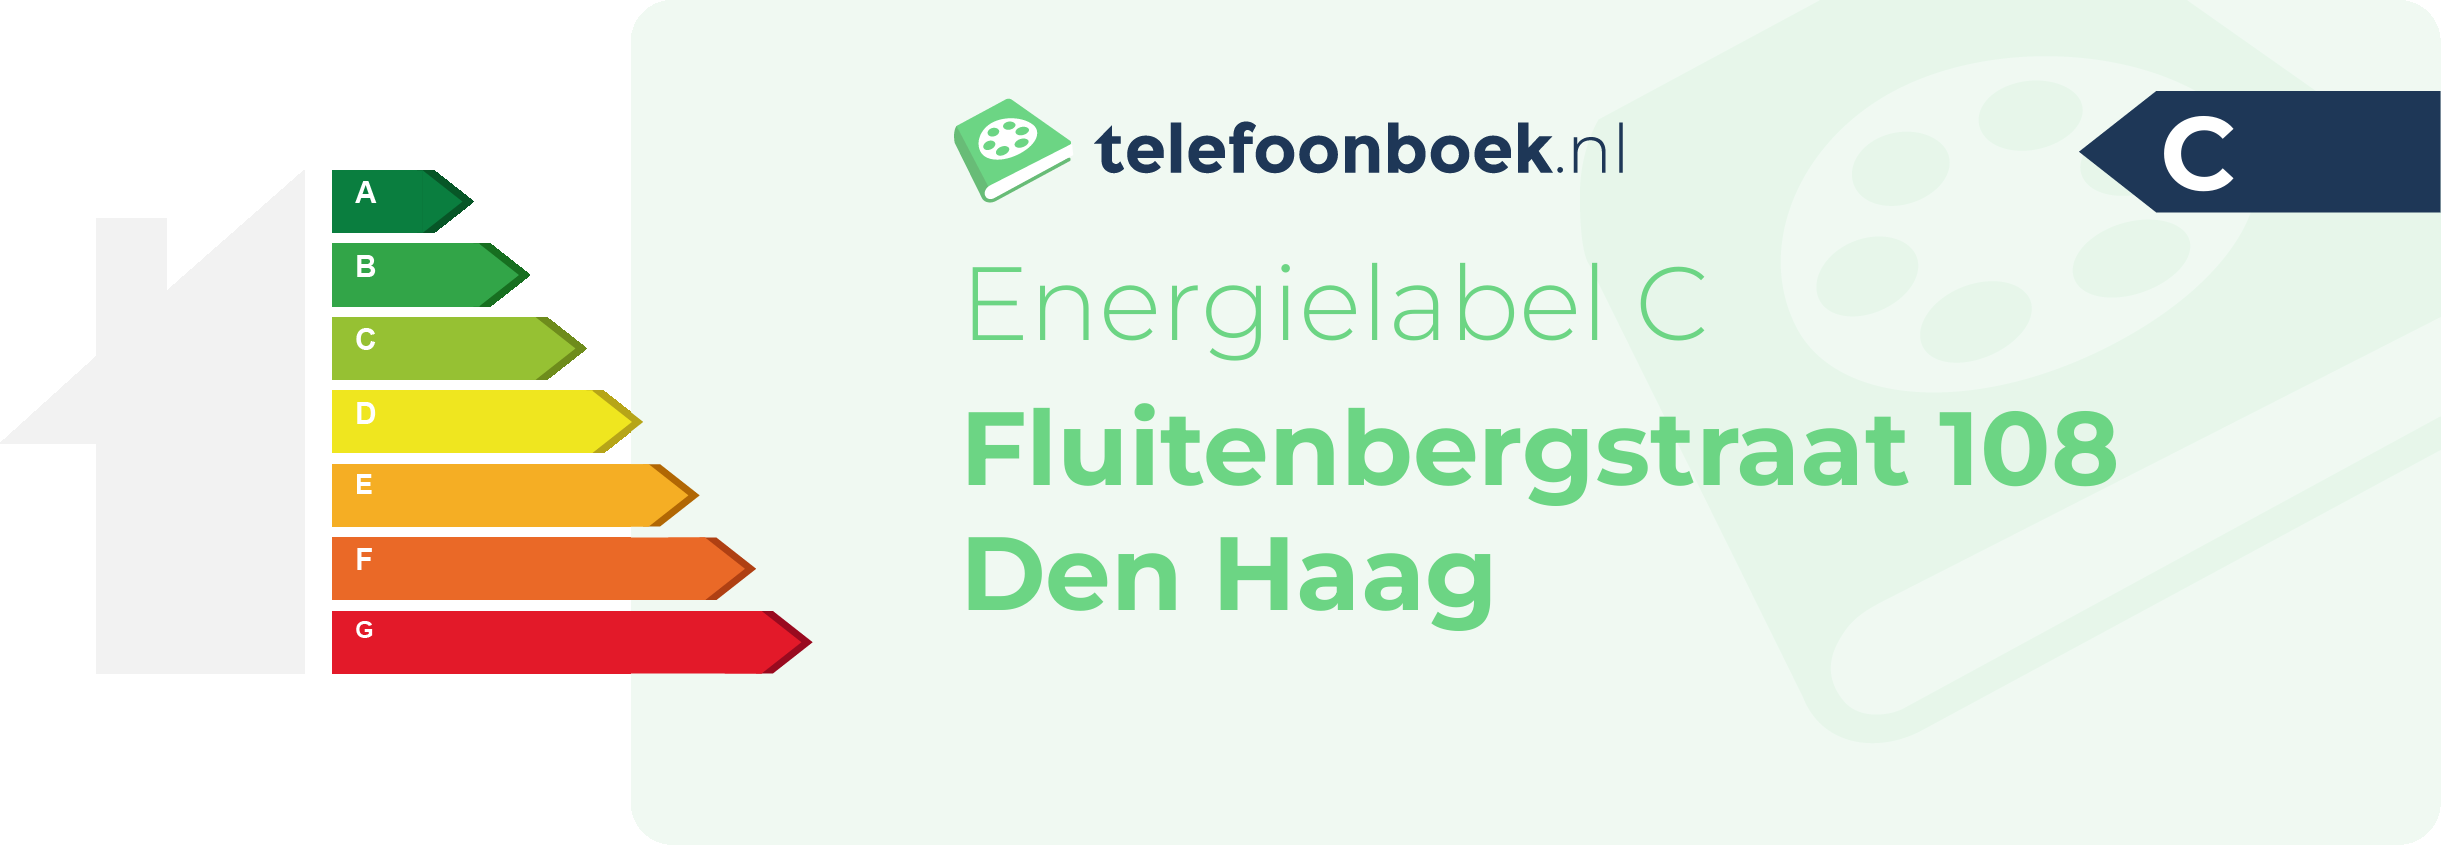 Energielabel Fluitenbergstraat 108 Den Haag